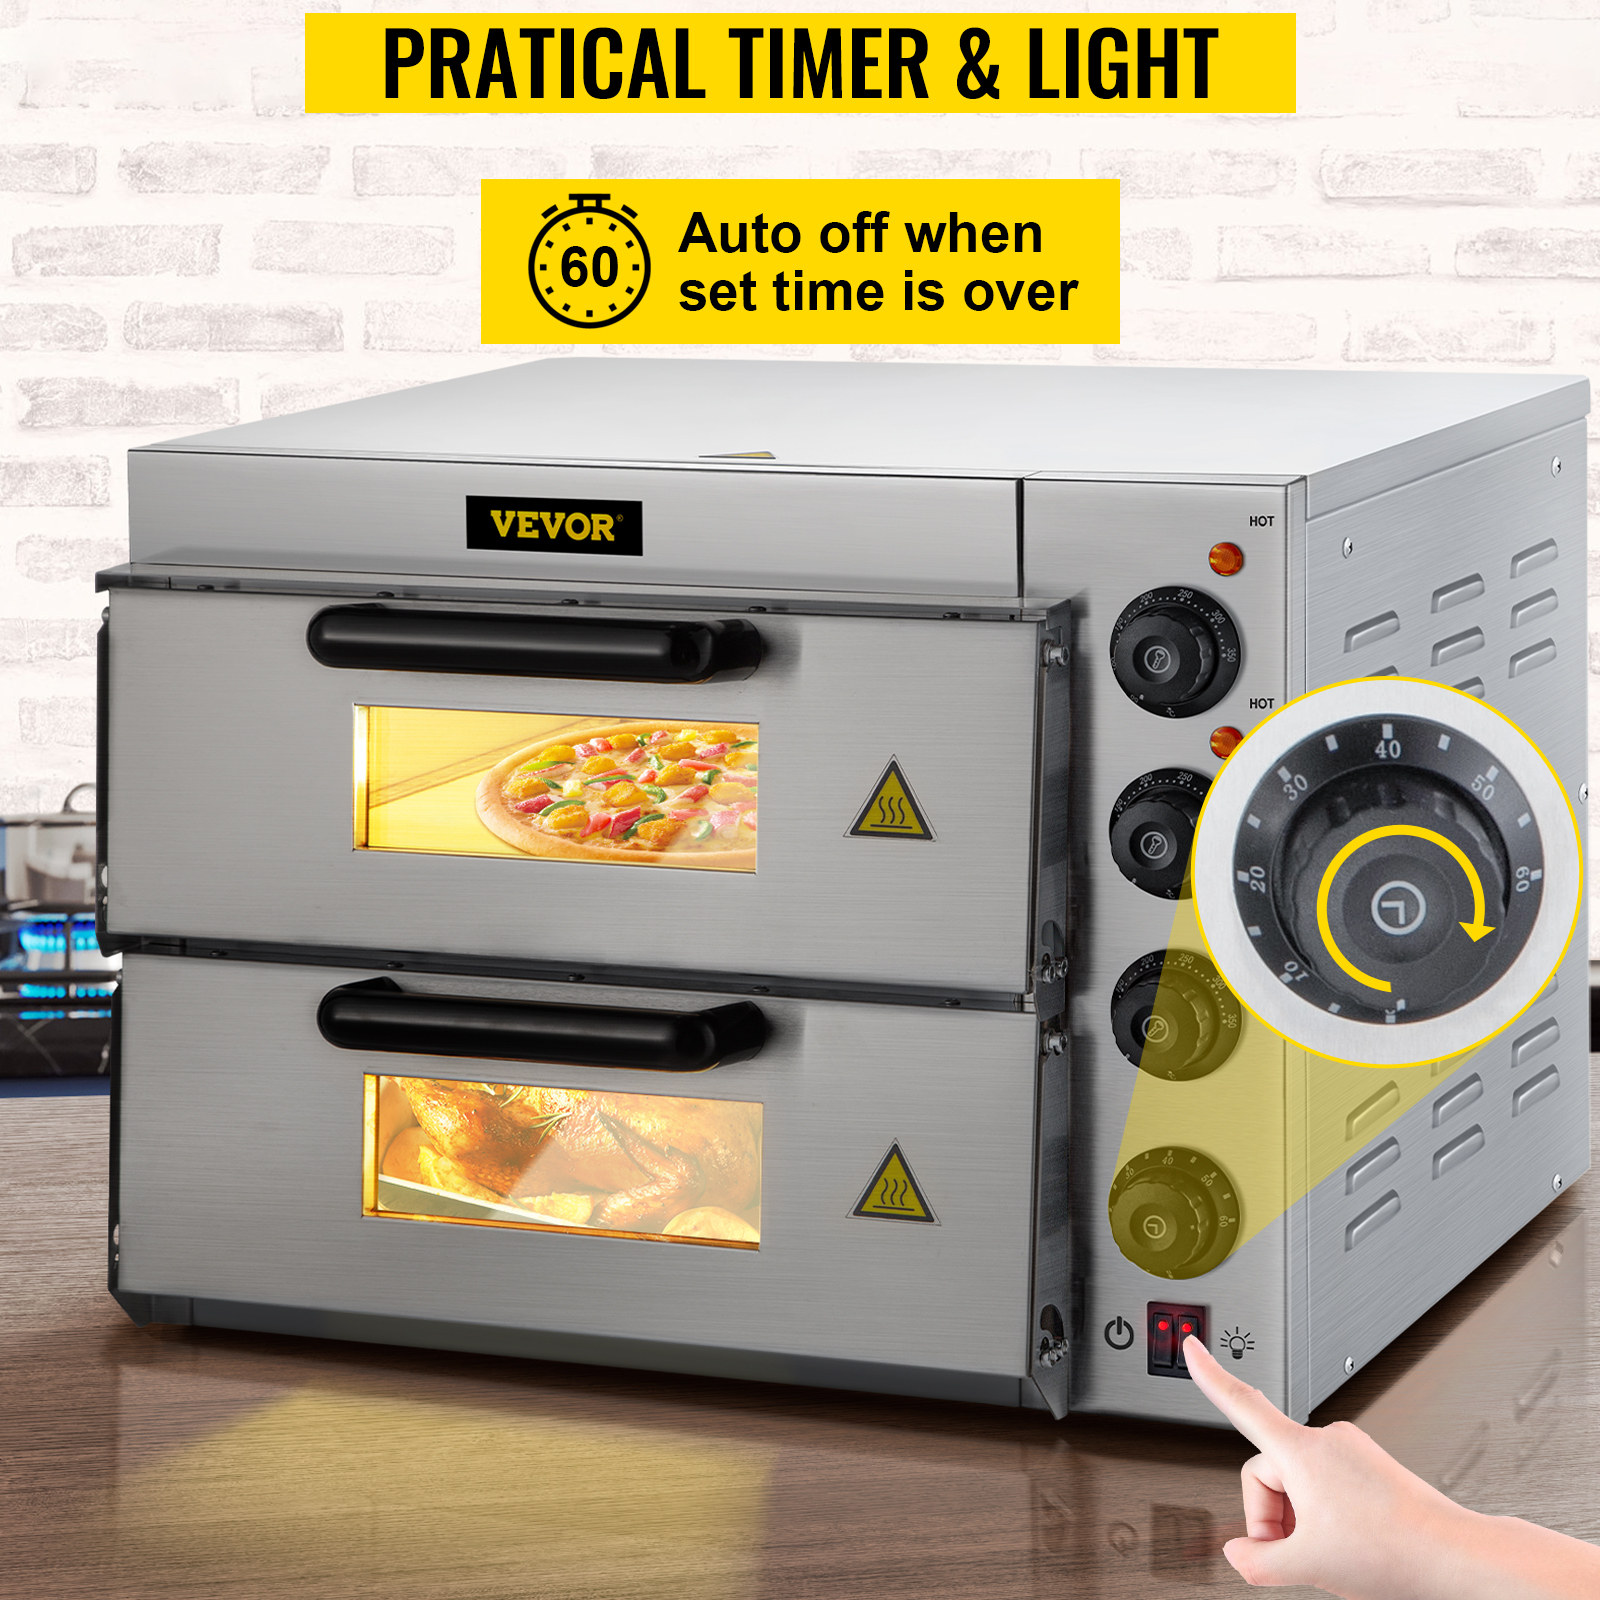 Horno Electrico Pequeno Acero Inoxidable Tostador Cocina Portatil Toaster  Oven